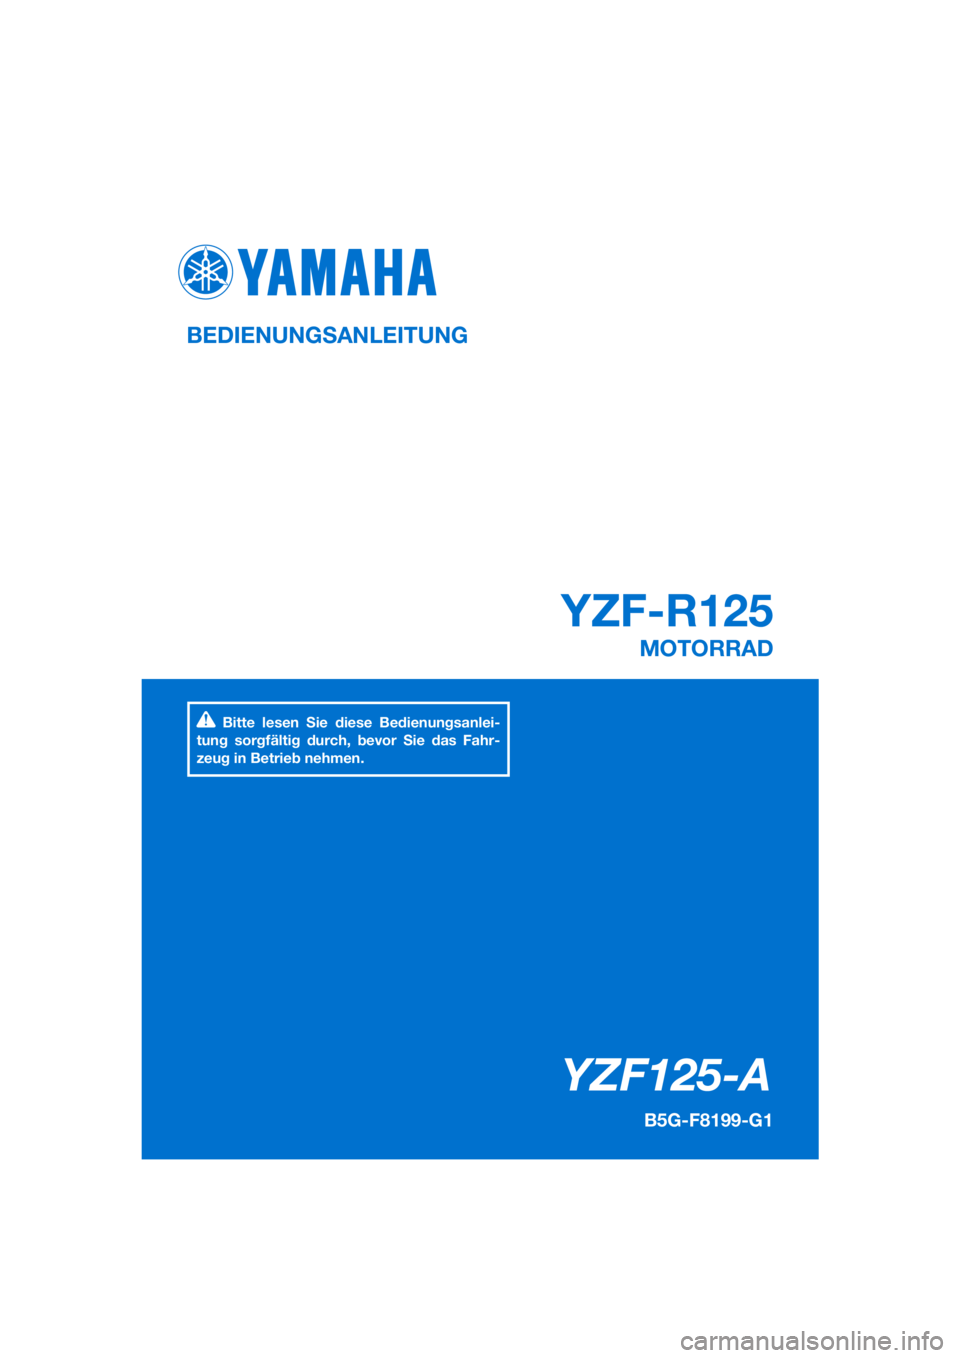 YAMAHA YZF-R125 2020  Betriebsanleitungen (in German) PANTONE285C
YZF125-A
YZF-R125
BEDIENUNGSANLEITUNG
B5G-F8199-G1
MOTORRAD
Bitte lesen Sie diese Bedienungsanlei-
tung sorgfältig durch, bevor Sie das Fahr-
zeug in Betrieb nehmen.
[German  (G)] 